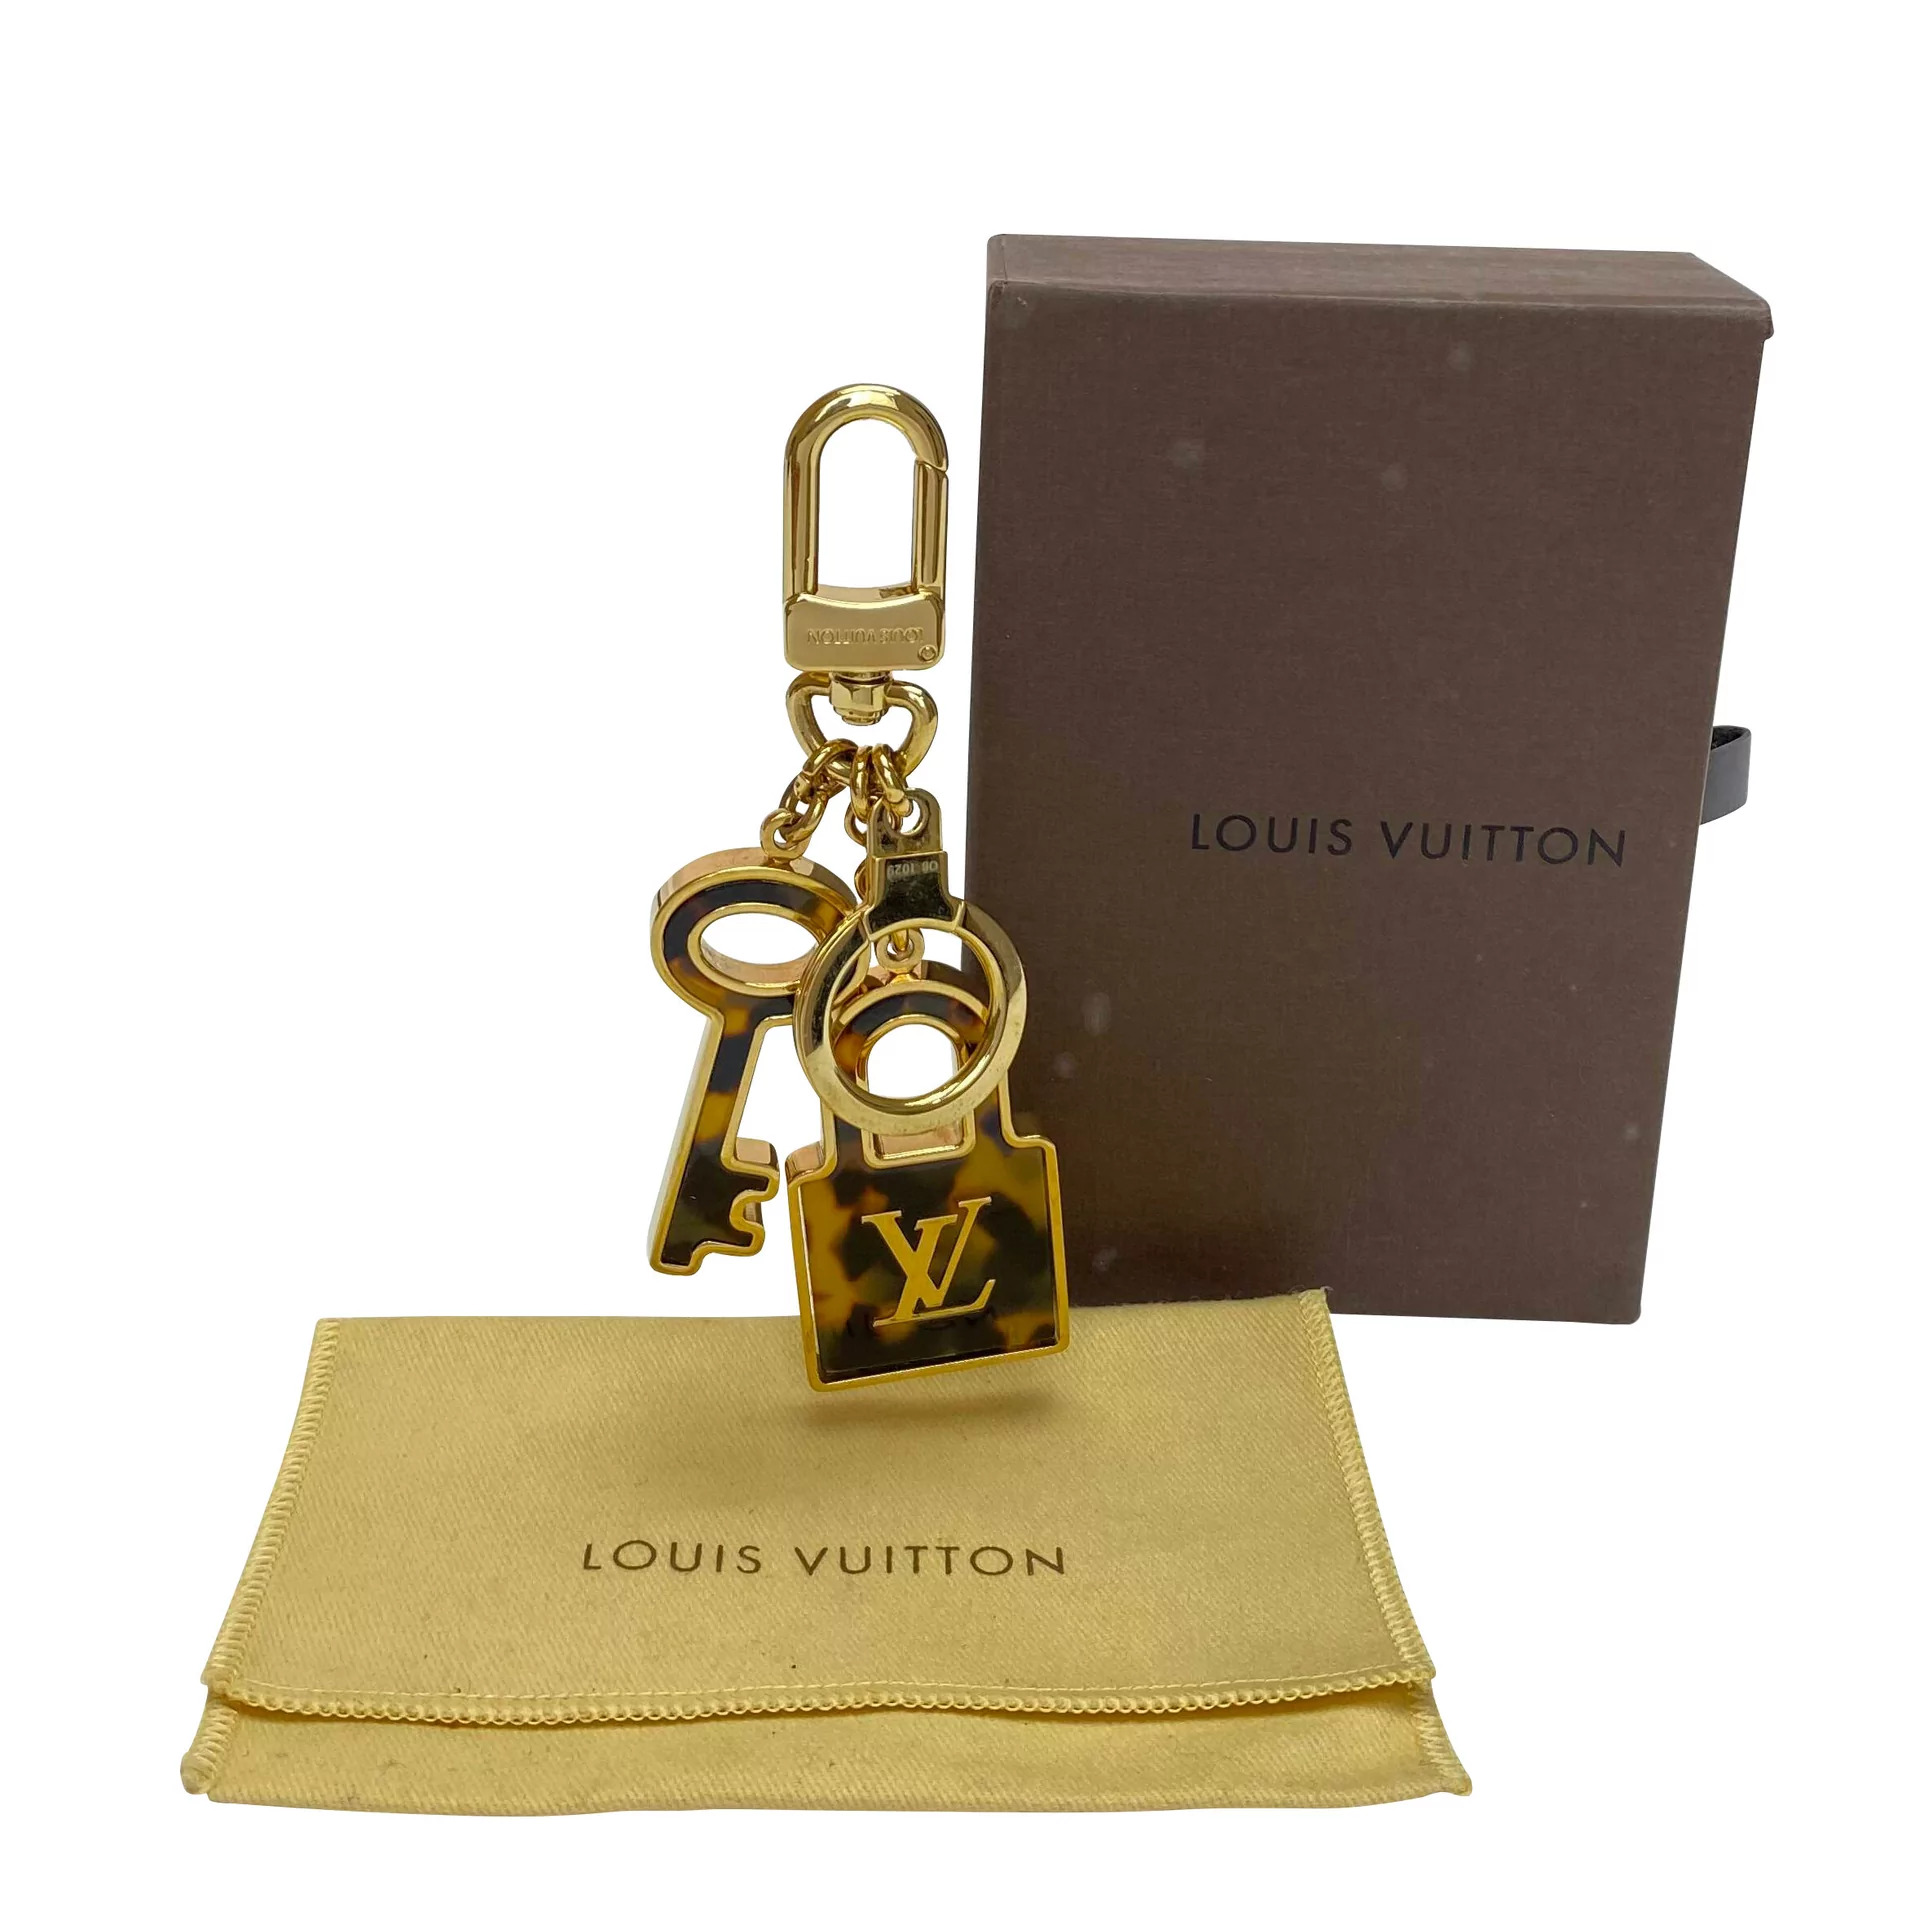 Louis Vuitton experimenta vitrines digitais para apresentar sua nova coleção